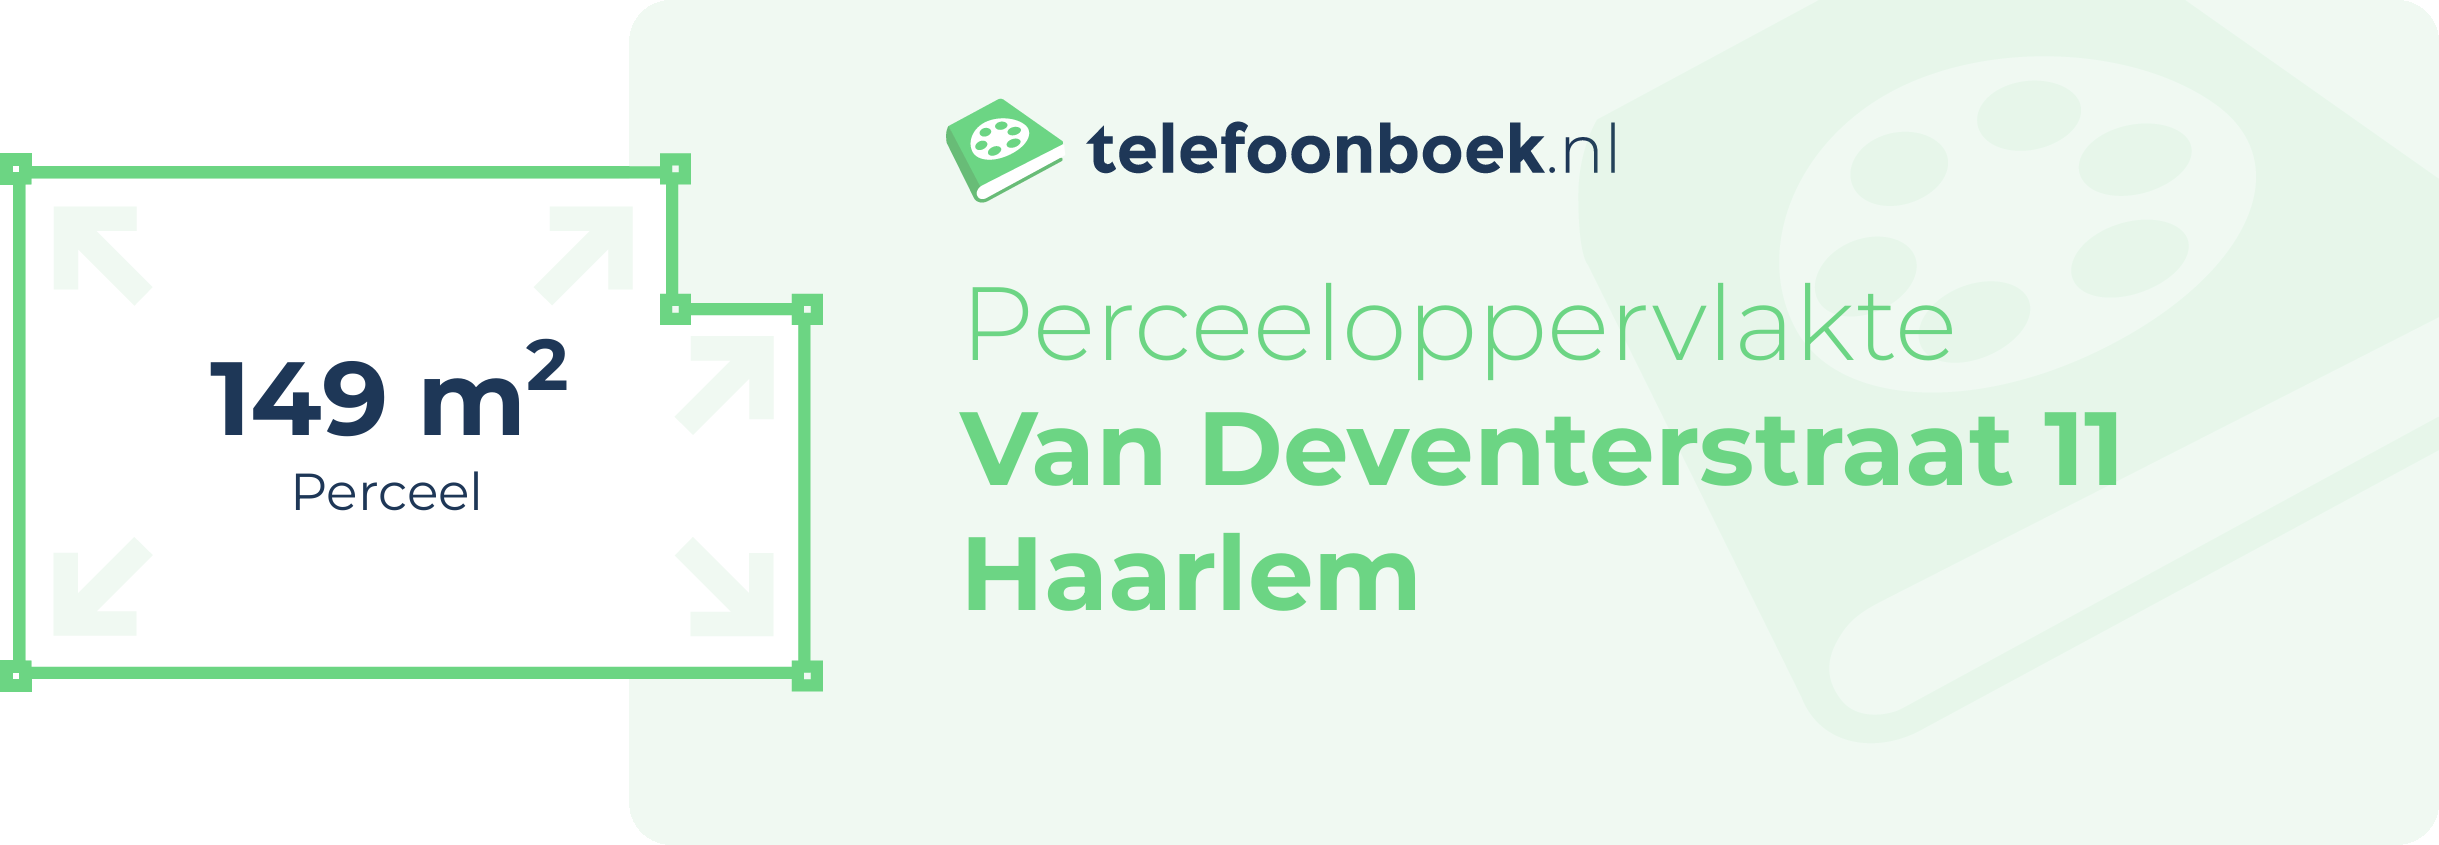 Perceeloppervlakte Van Deventerstraat 11 Haarlem